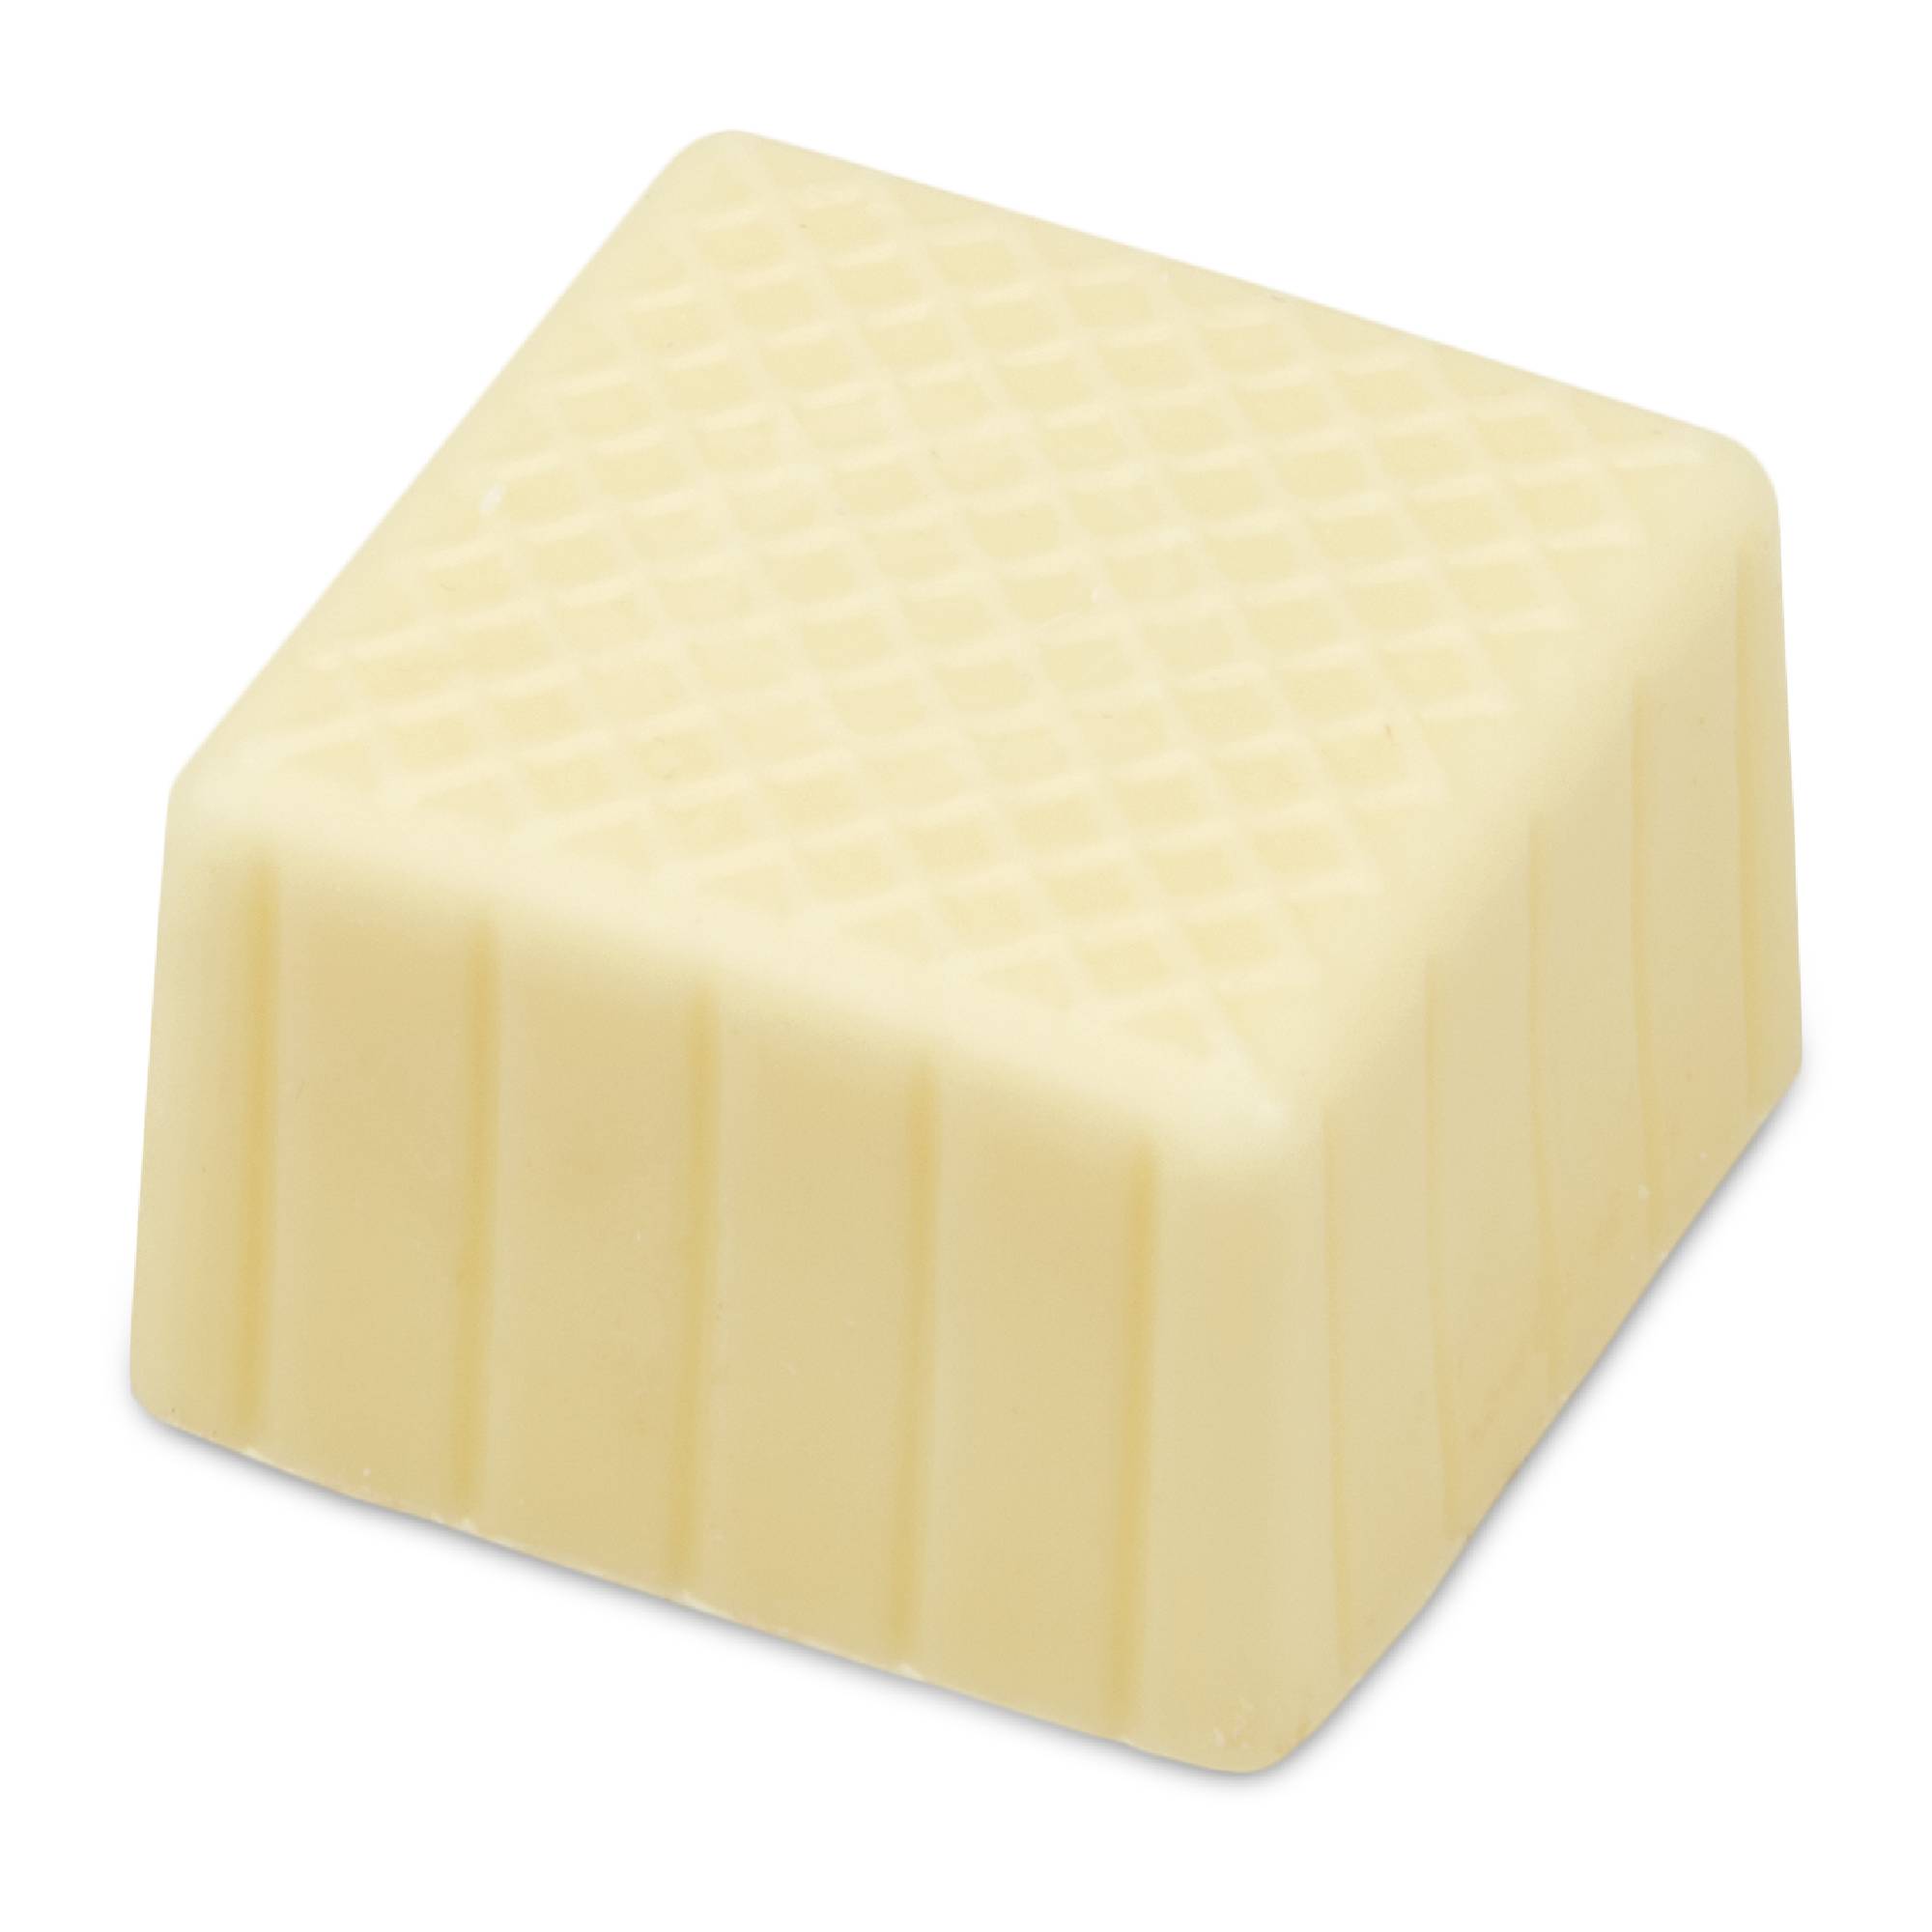 Pralinen-Hohlkörper – Carree – Weiße Schokolade – 63 Stück